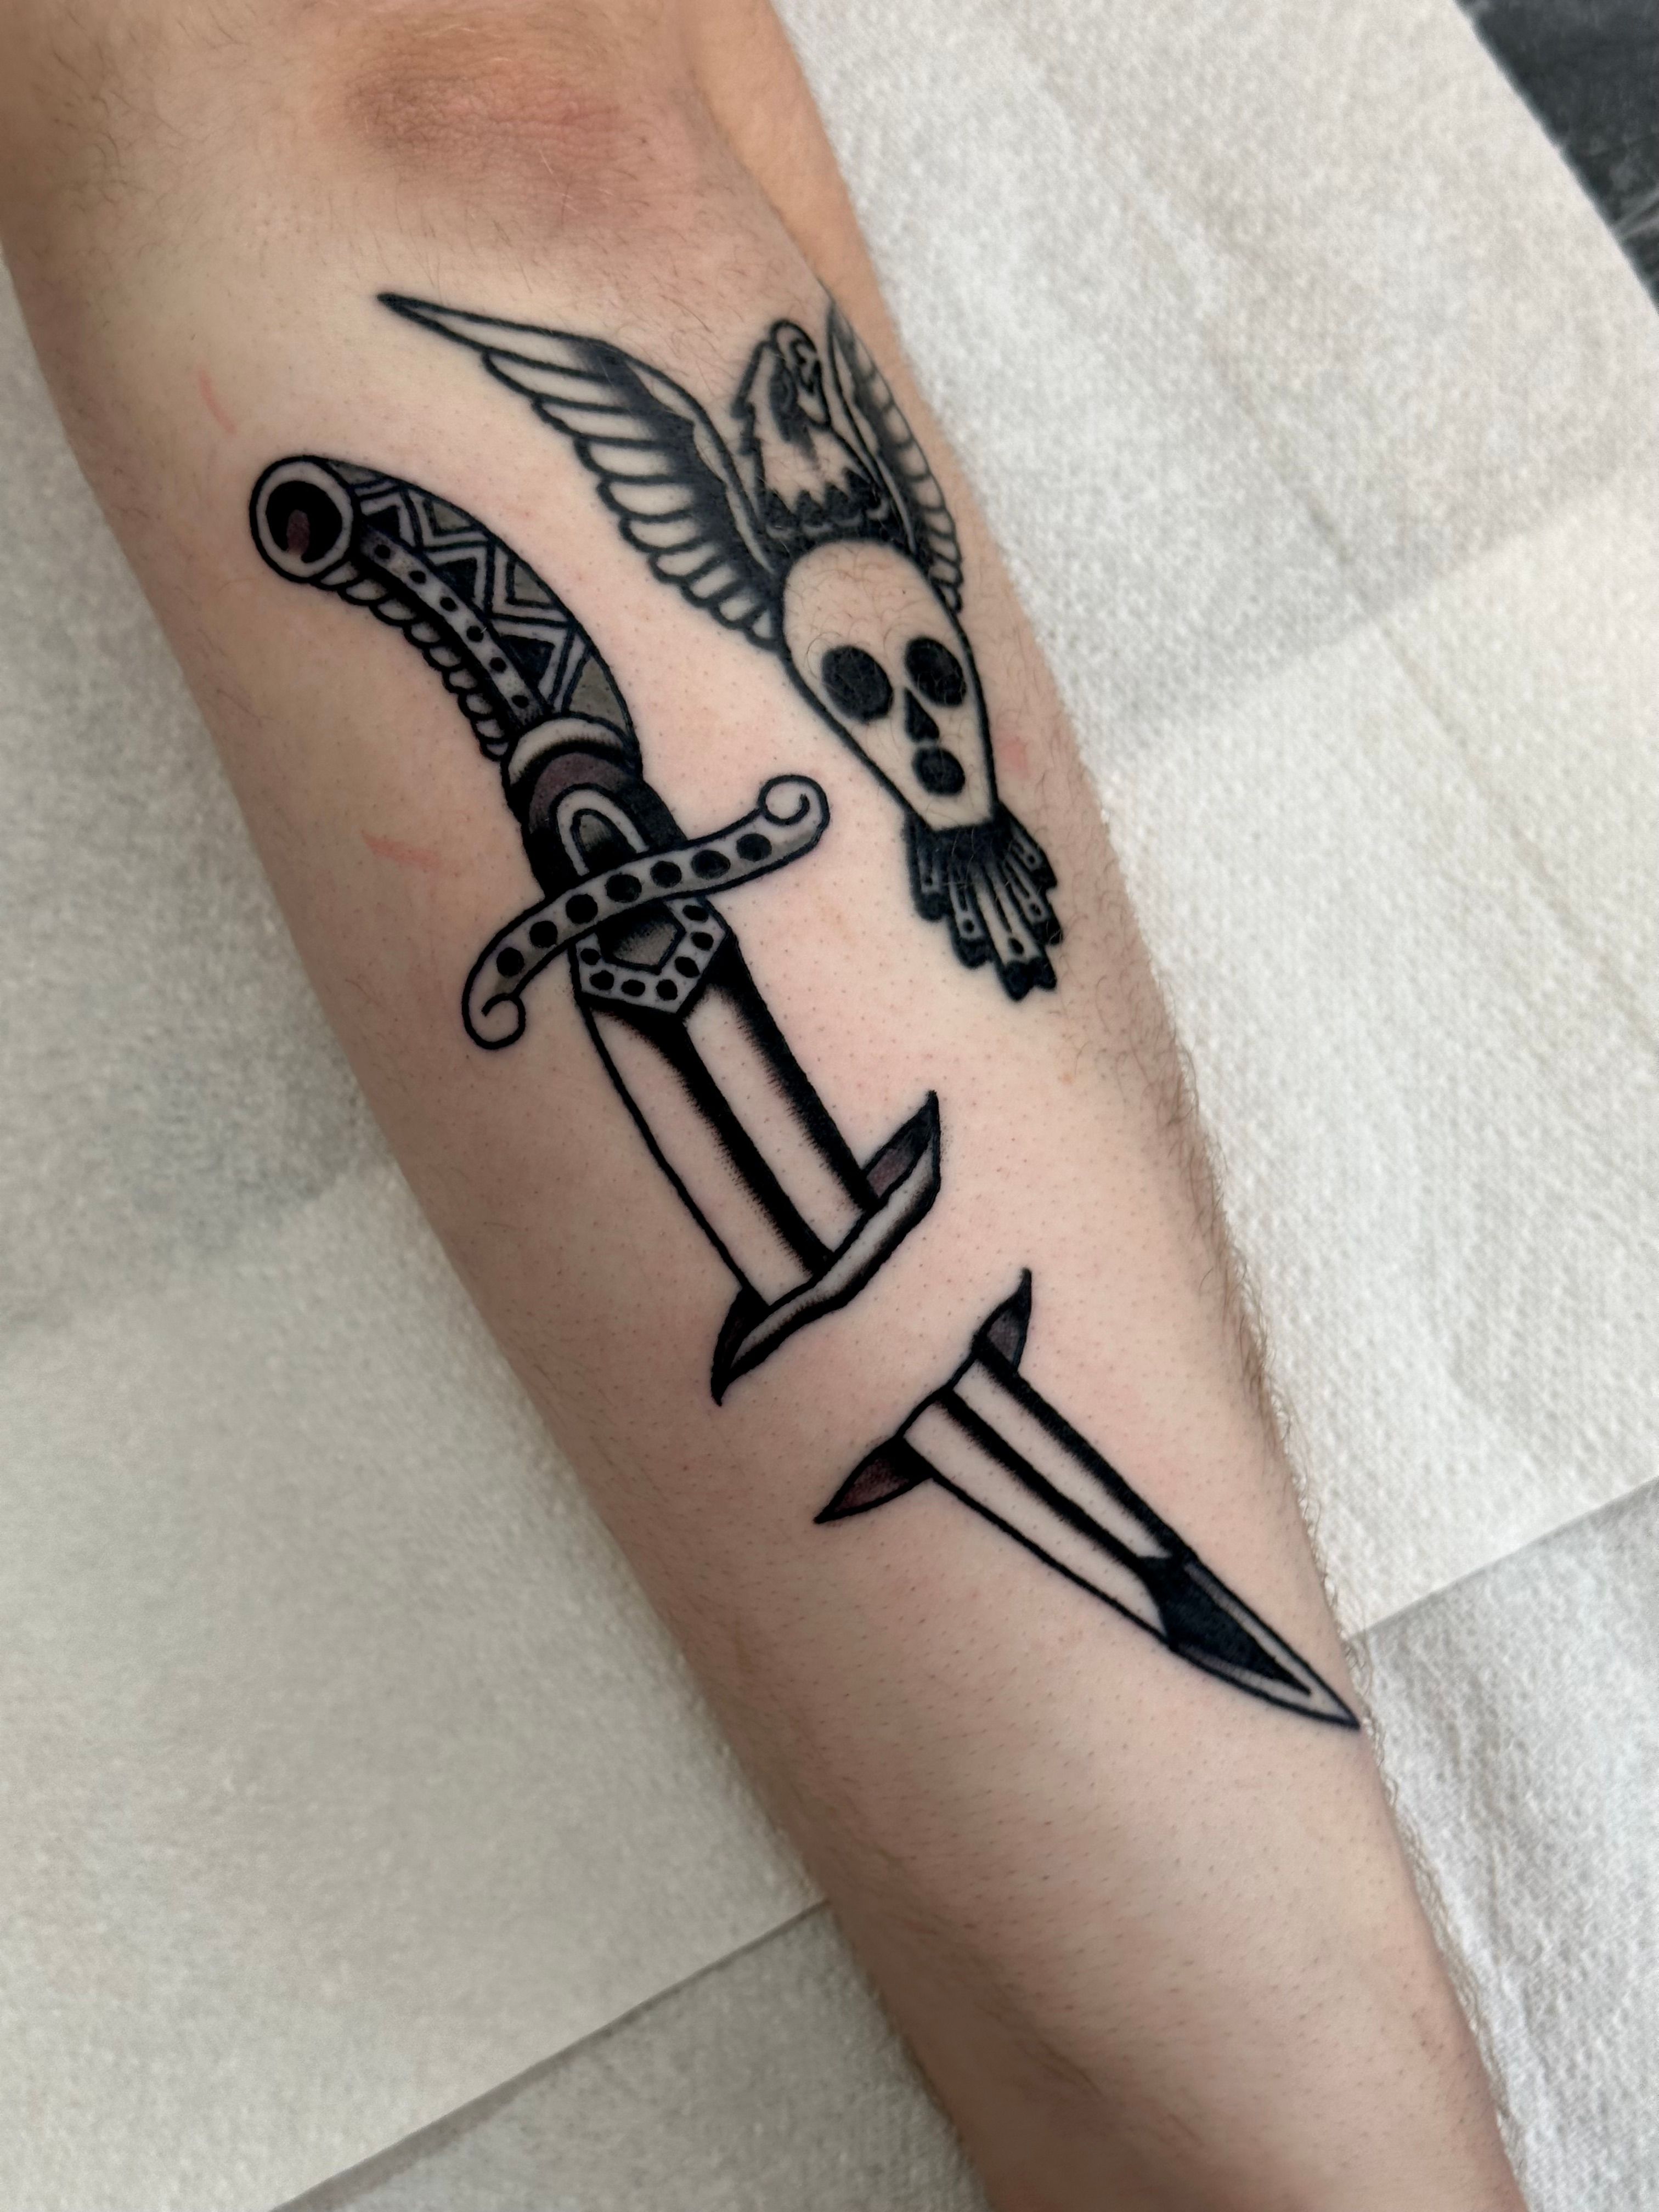 Dagger tattoo ideas | Tattoo flash art, Traditional dagger tattoo, Dagger  tattoo